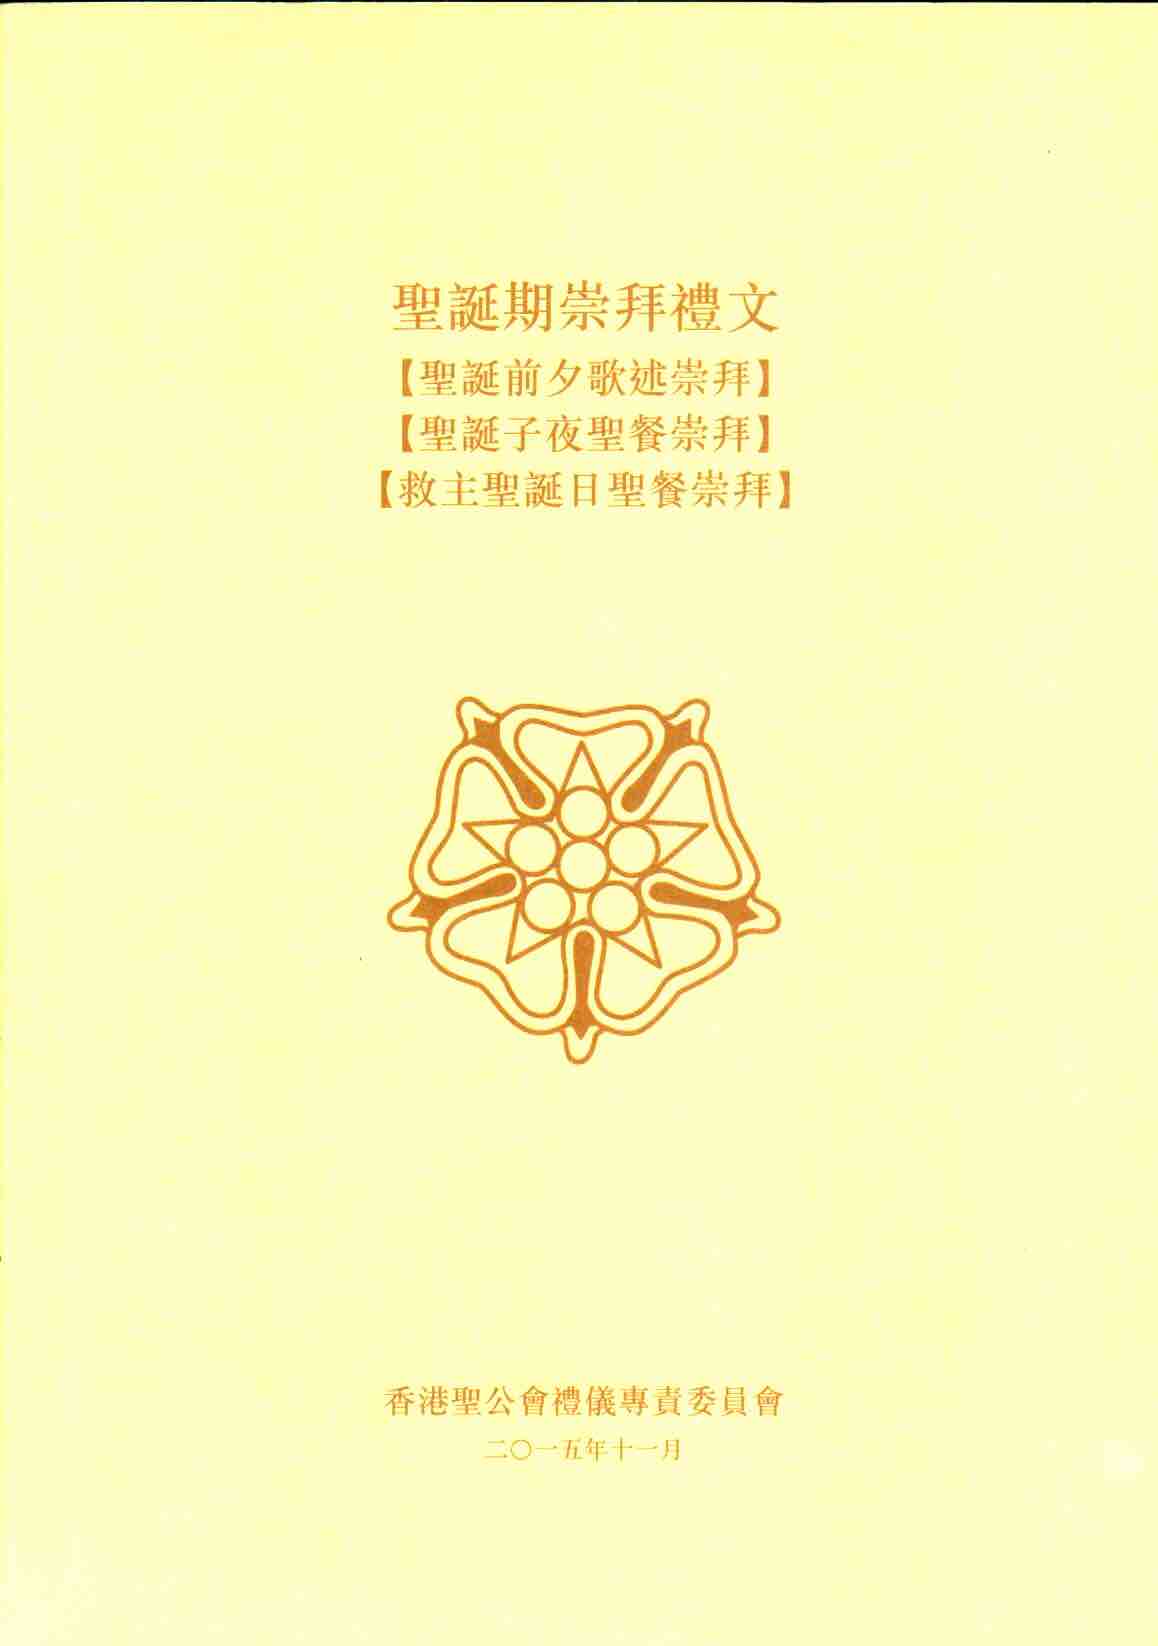 Cover of 聖誕期崇拜禮文